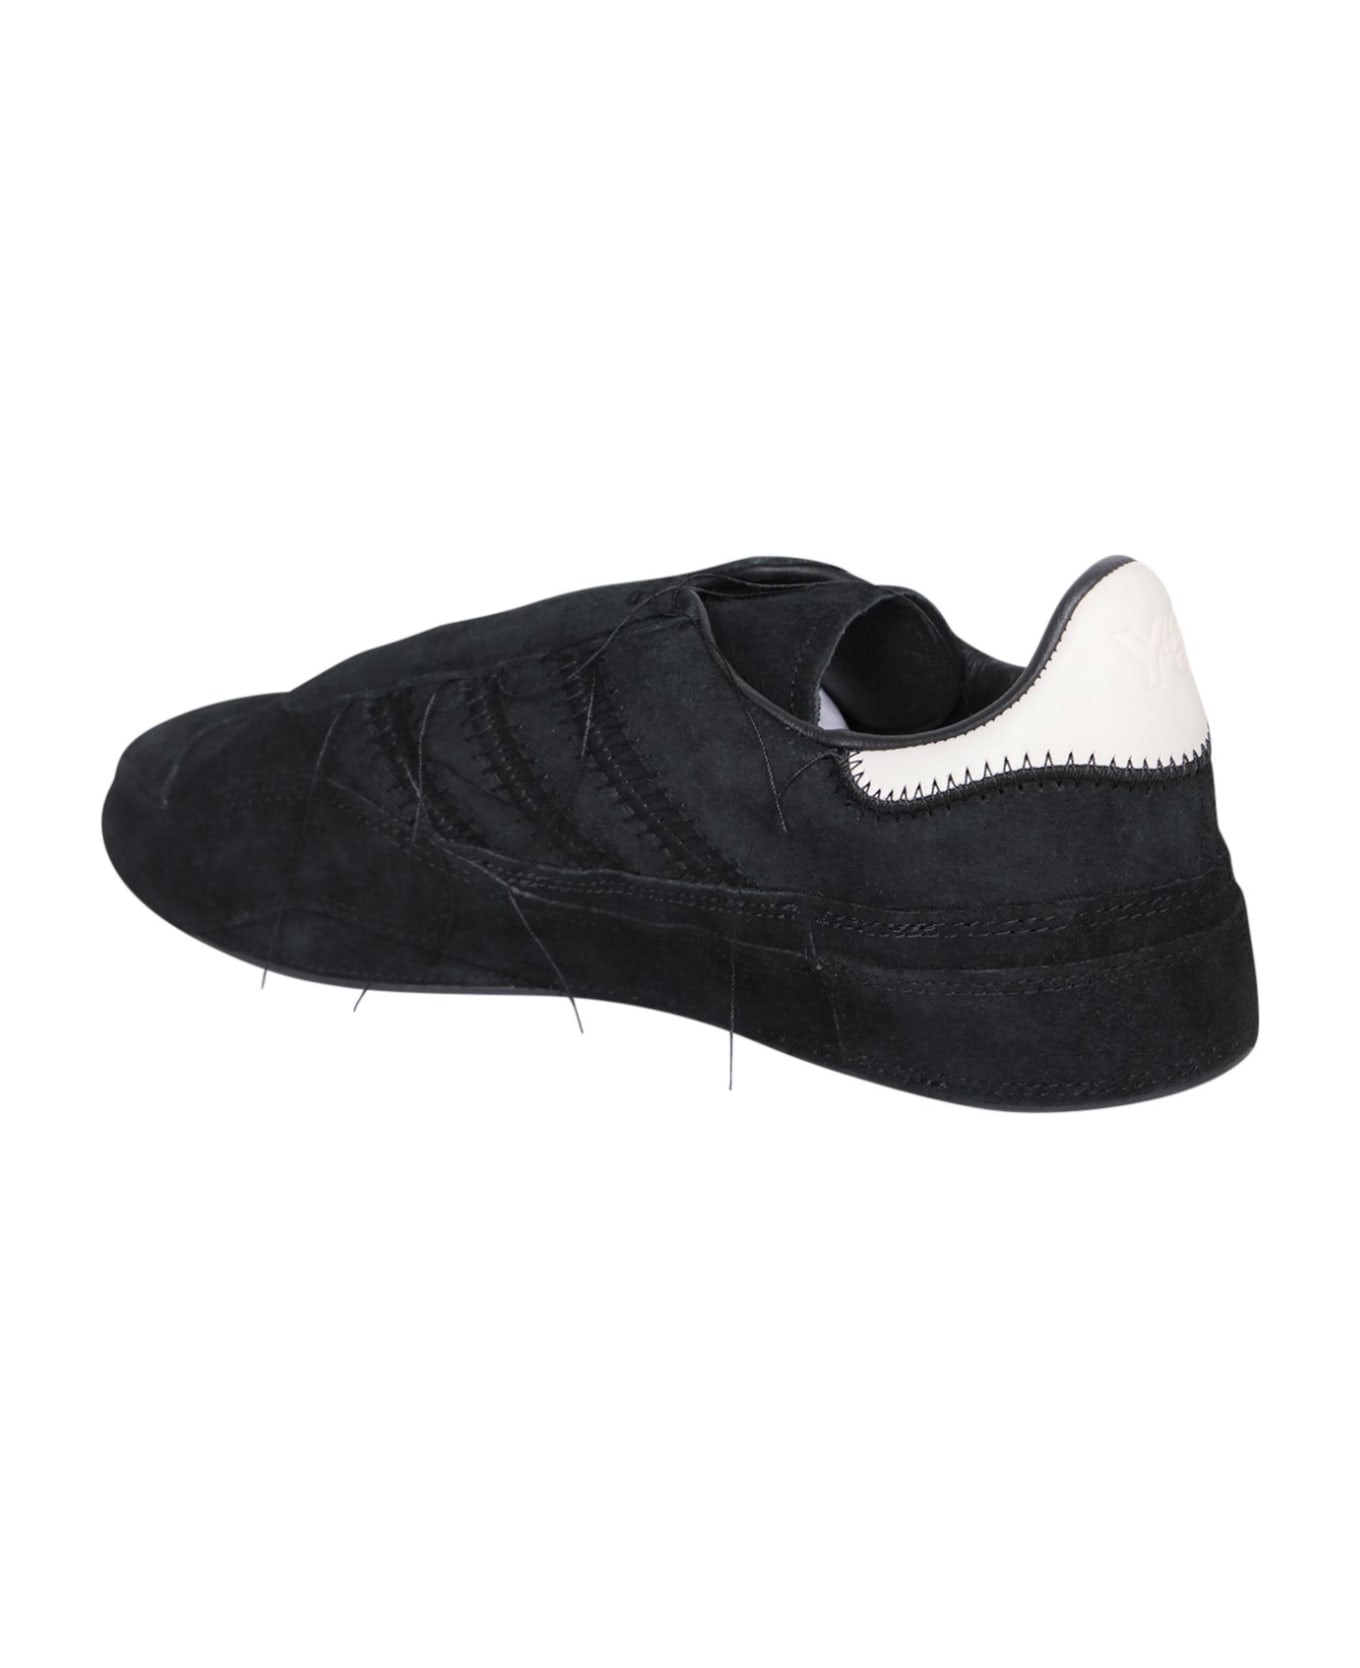 Y-3 Gazelle Black Sneakers - Black